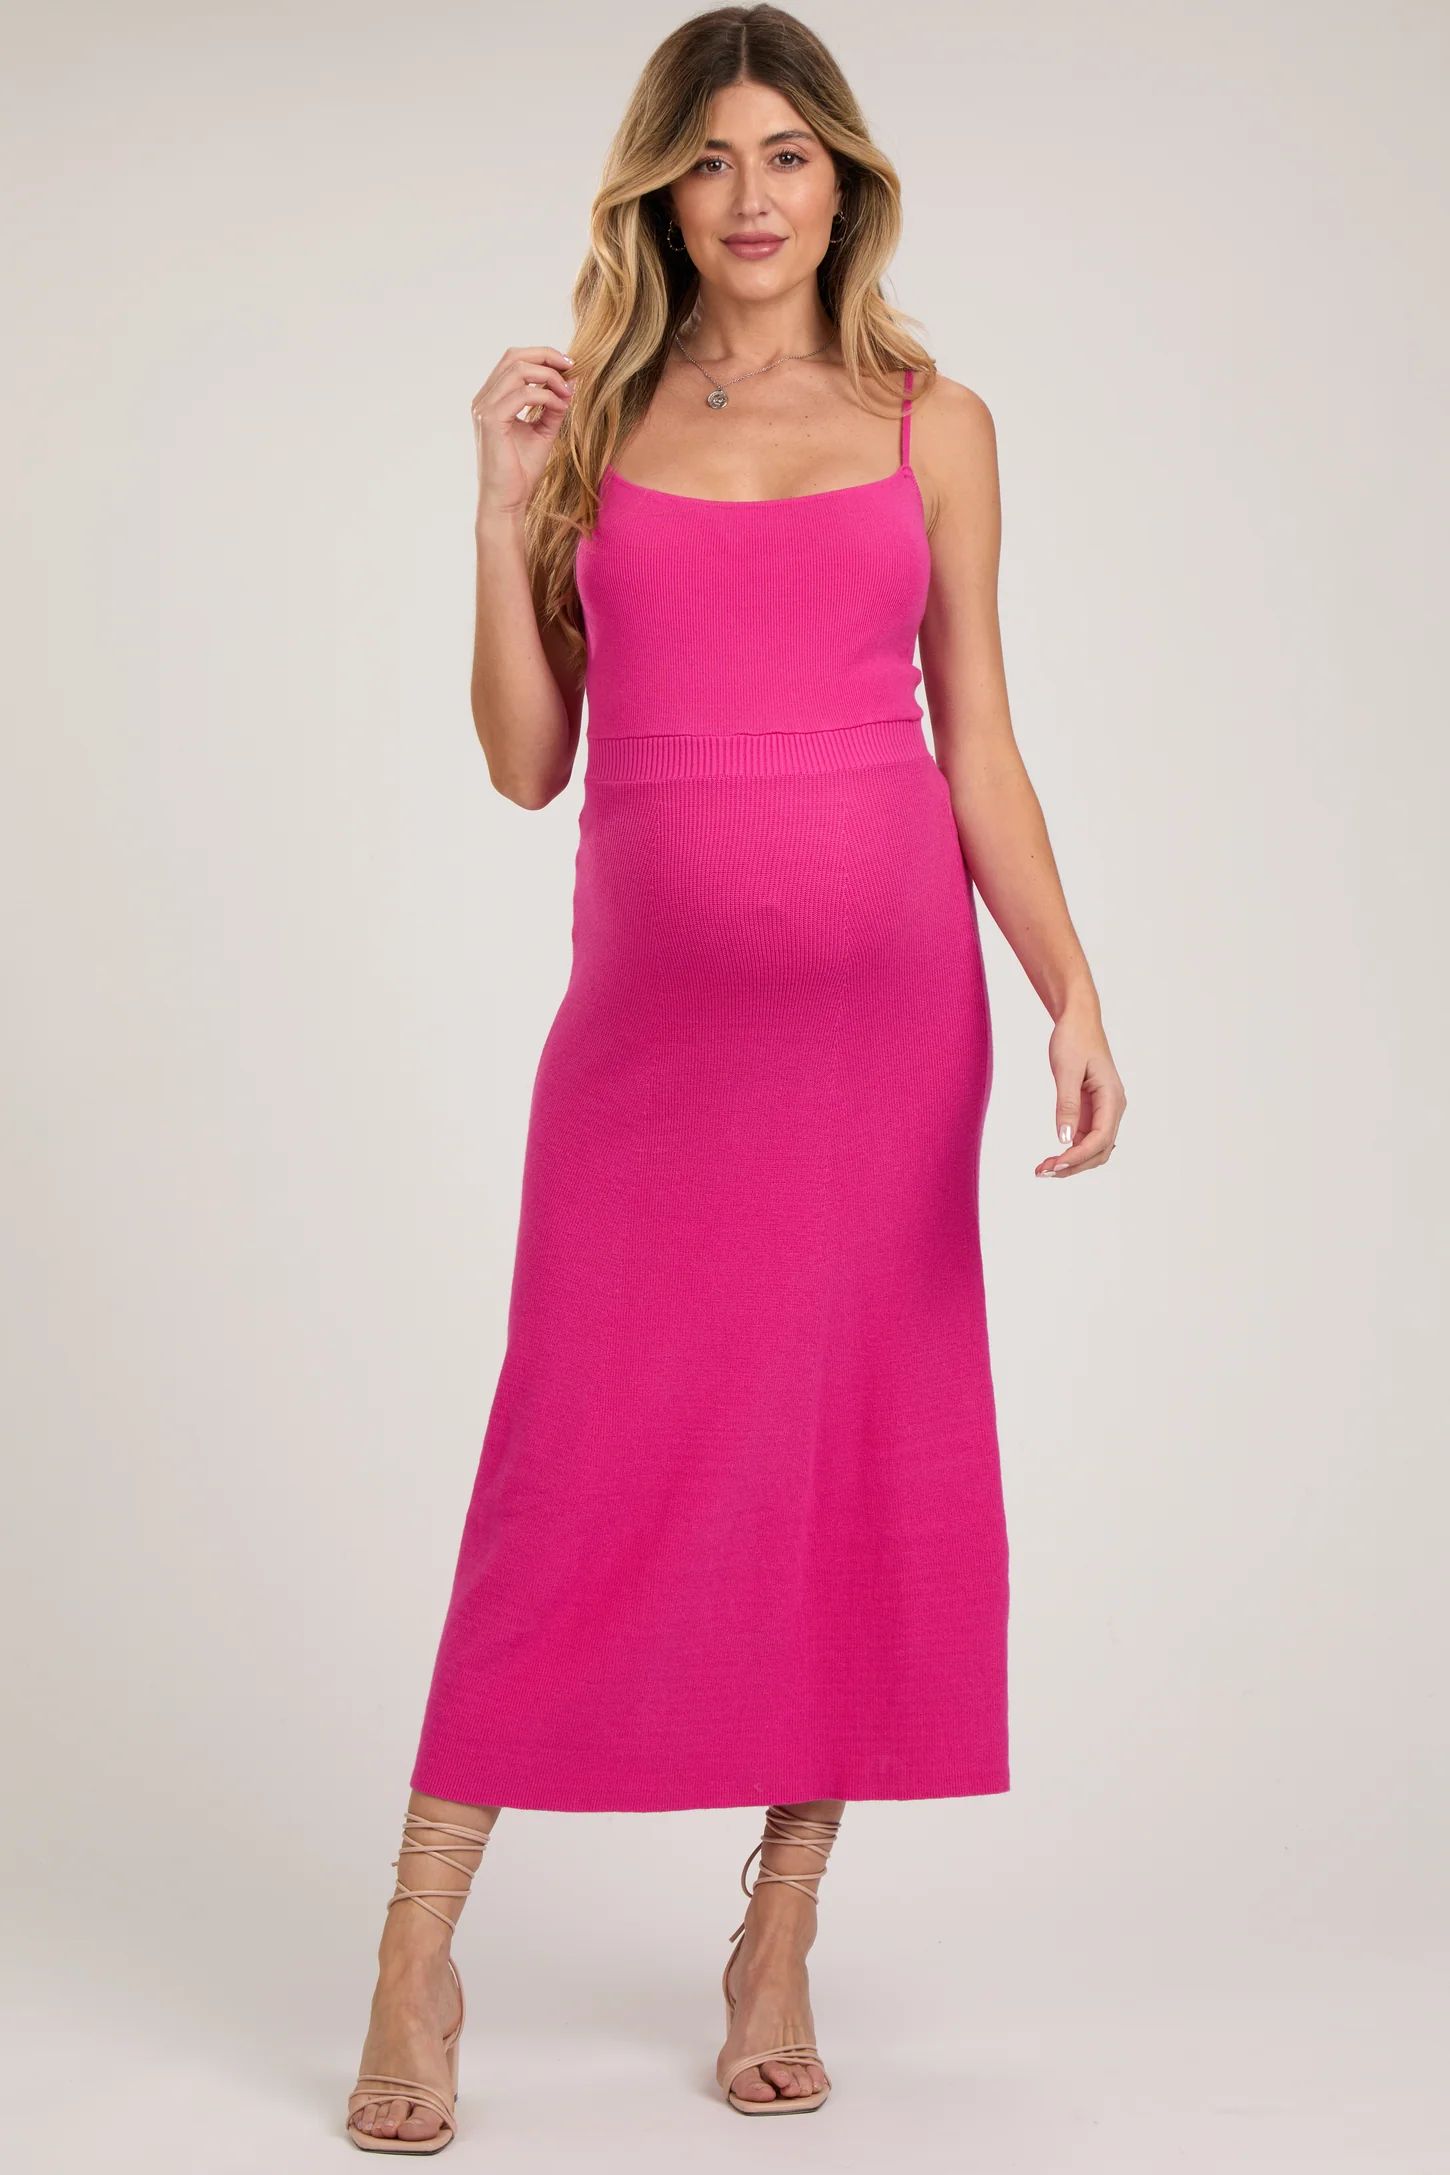 Fuchsia Square Neck Sleeveless Sweater Maternity Midi Dress | PinkBlush Maternity